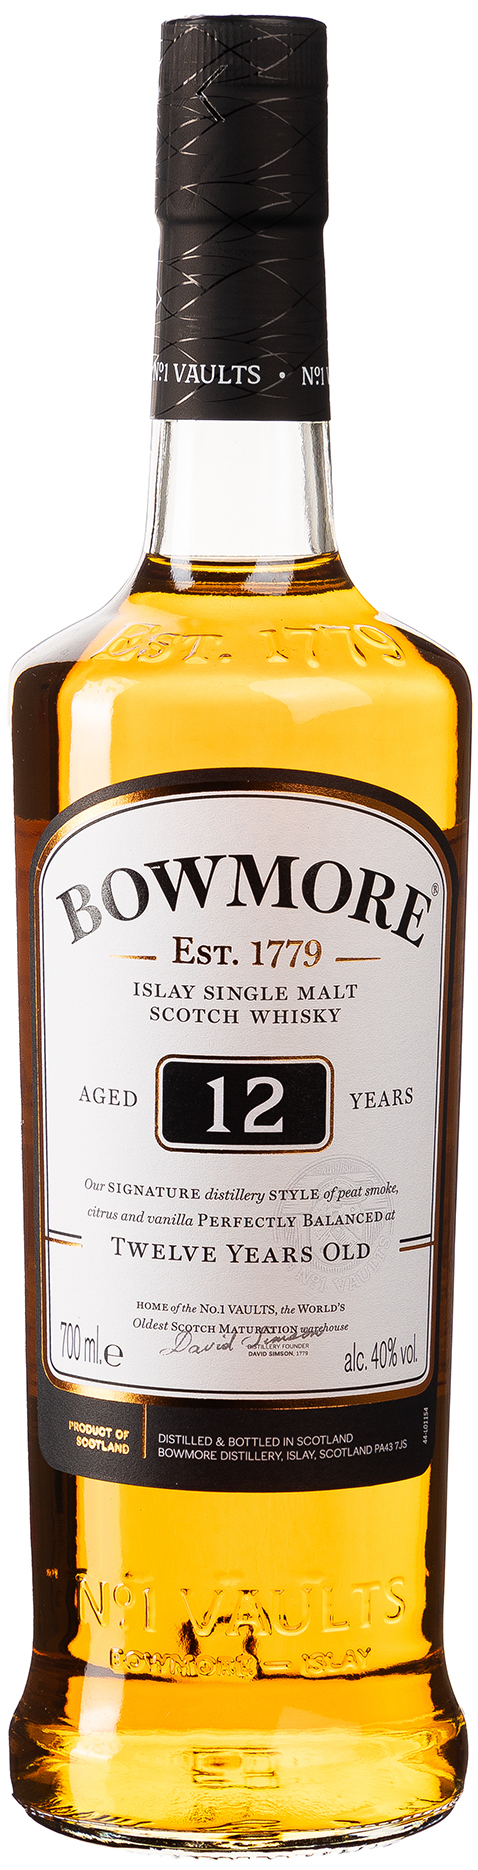 Bowmore Islay Single Malt Scotch Whisky 12Y GP 40% vol. 0,7L